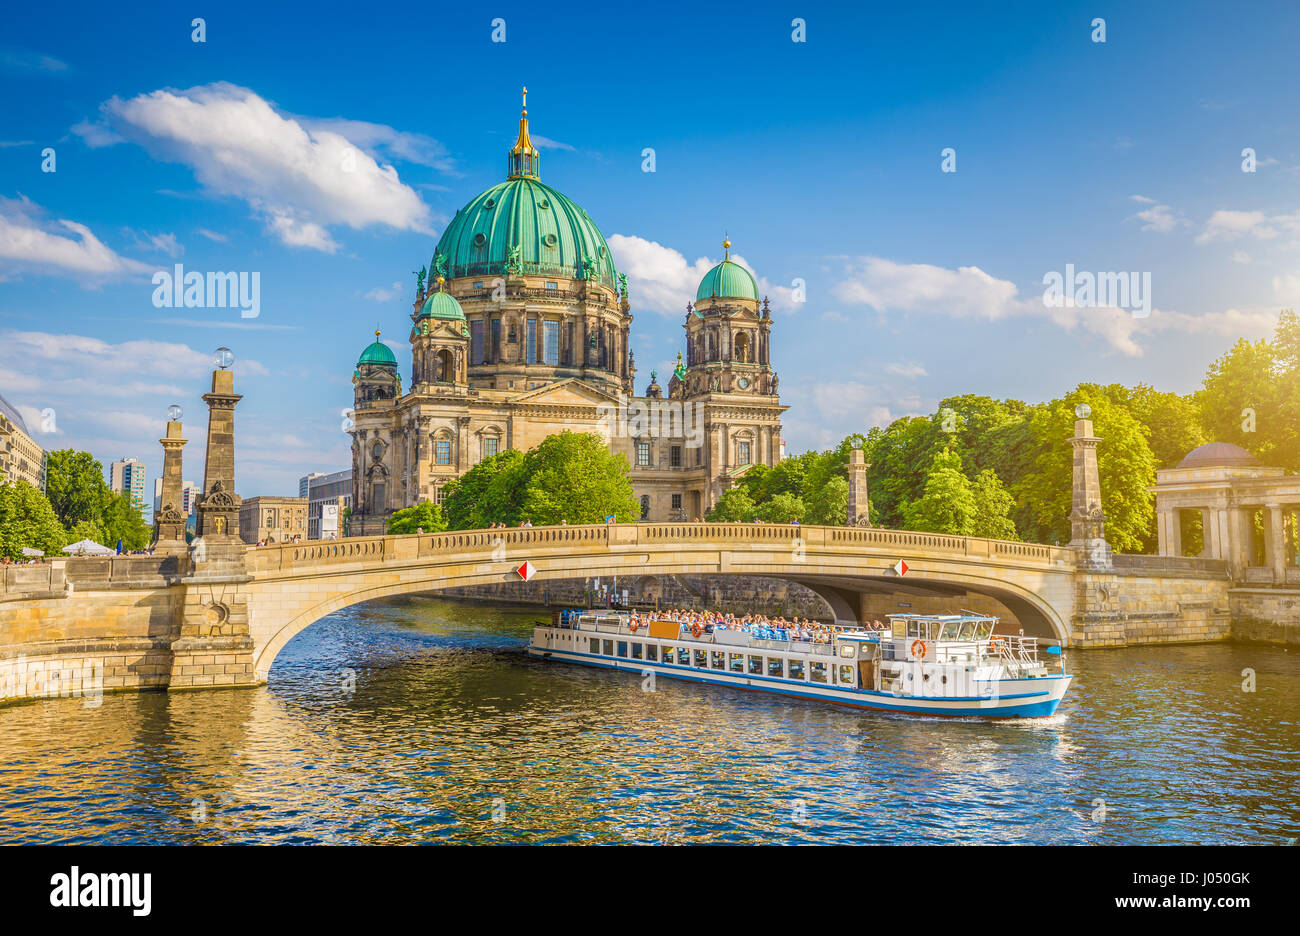 Belle vue de la ville historique de la cathédrale de Berlin (Berliner Dom) à la célèbre île aux musées Friedrichsbrucke avec passage sur le pont du navire de la Spree, au coucher du soleil Banque D'Images